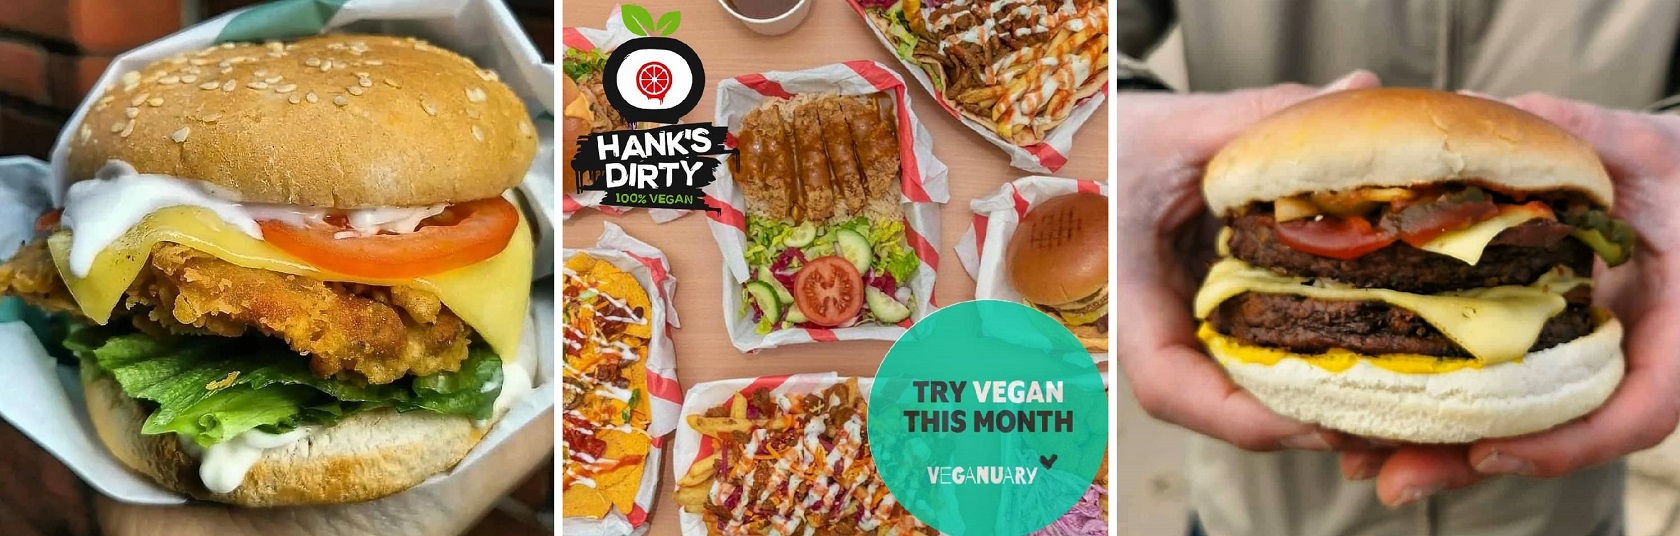 Vegan Burgers at Hanks